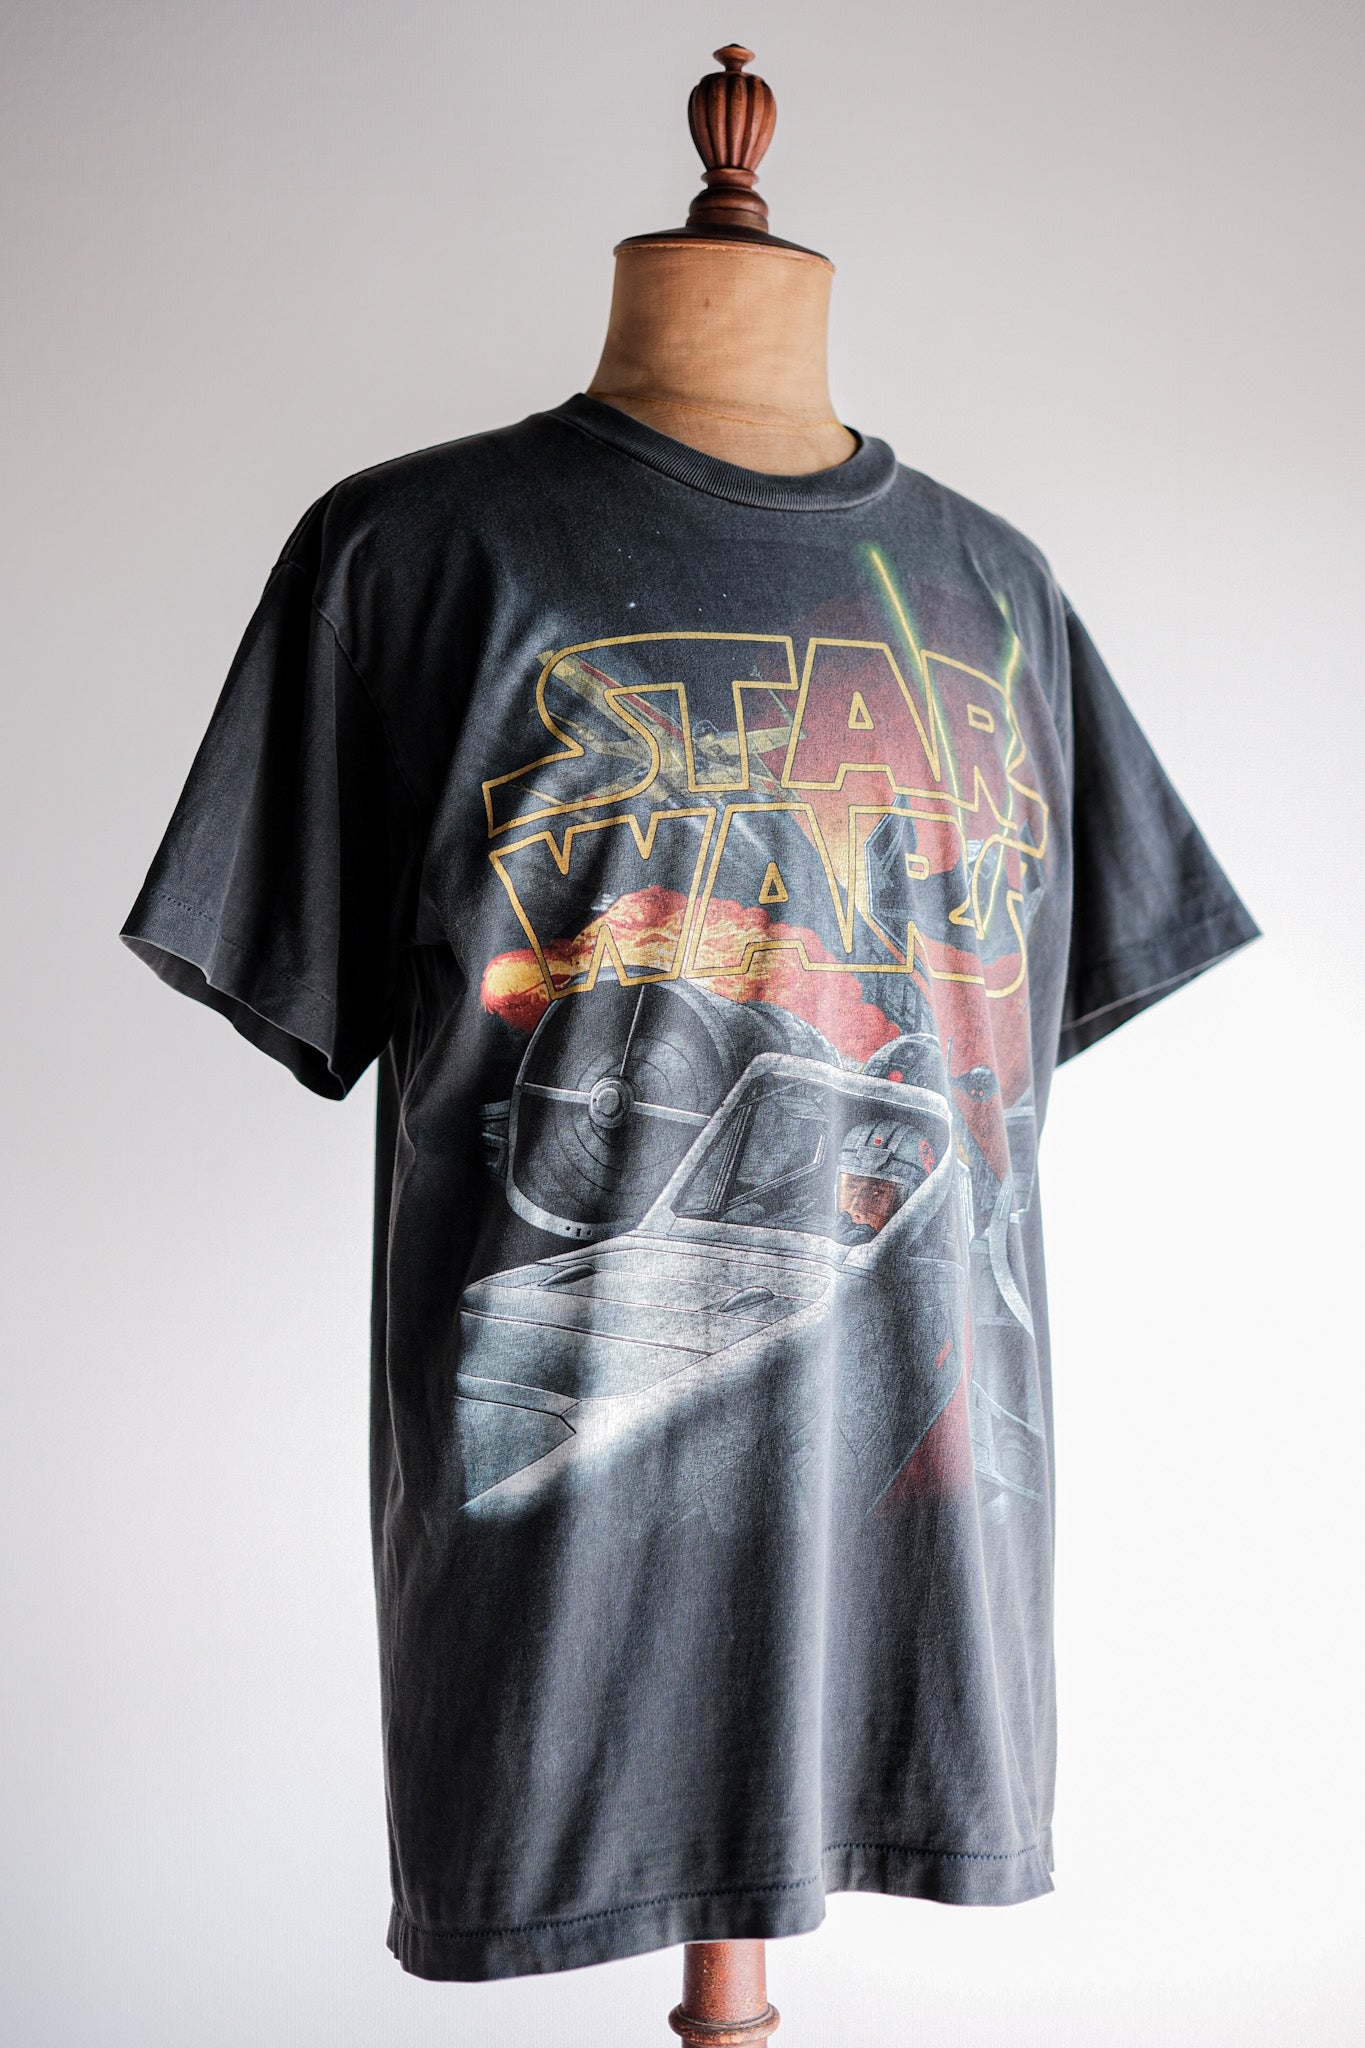 [~ 90 년대] 빈티지 영화 프린트 티셔츠 크기. L "Star Wars" "Made in U.S.A."